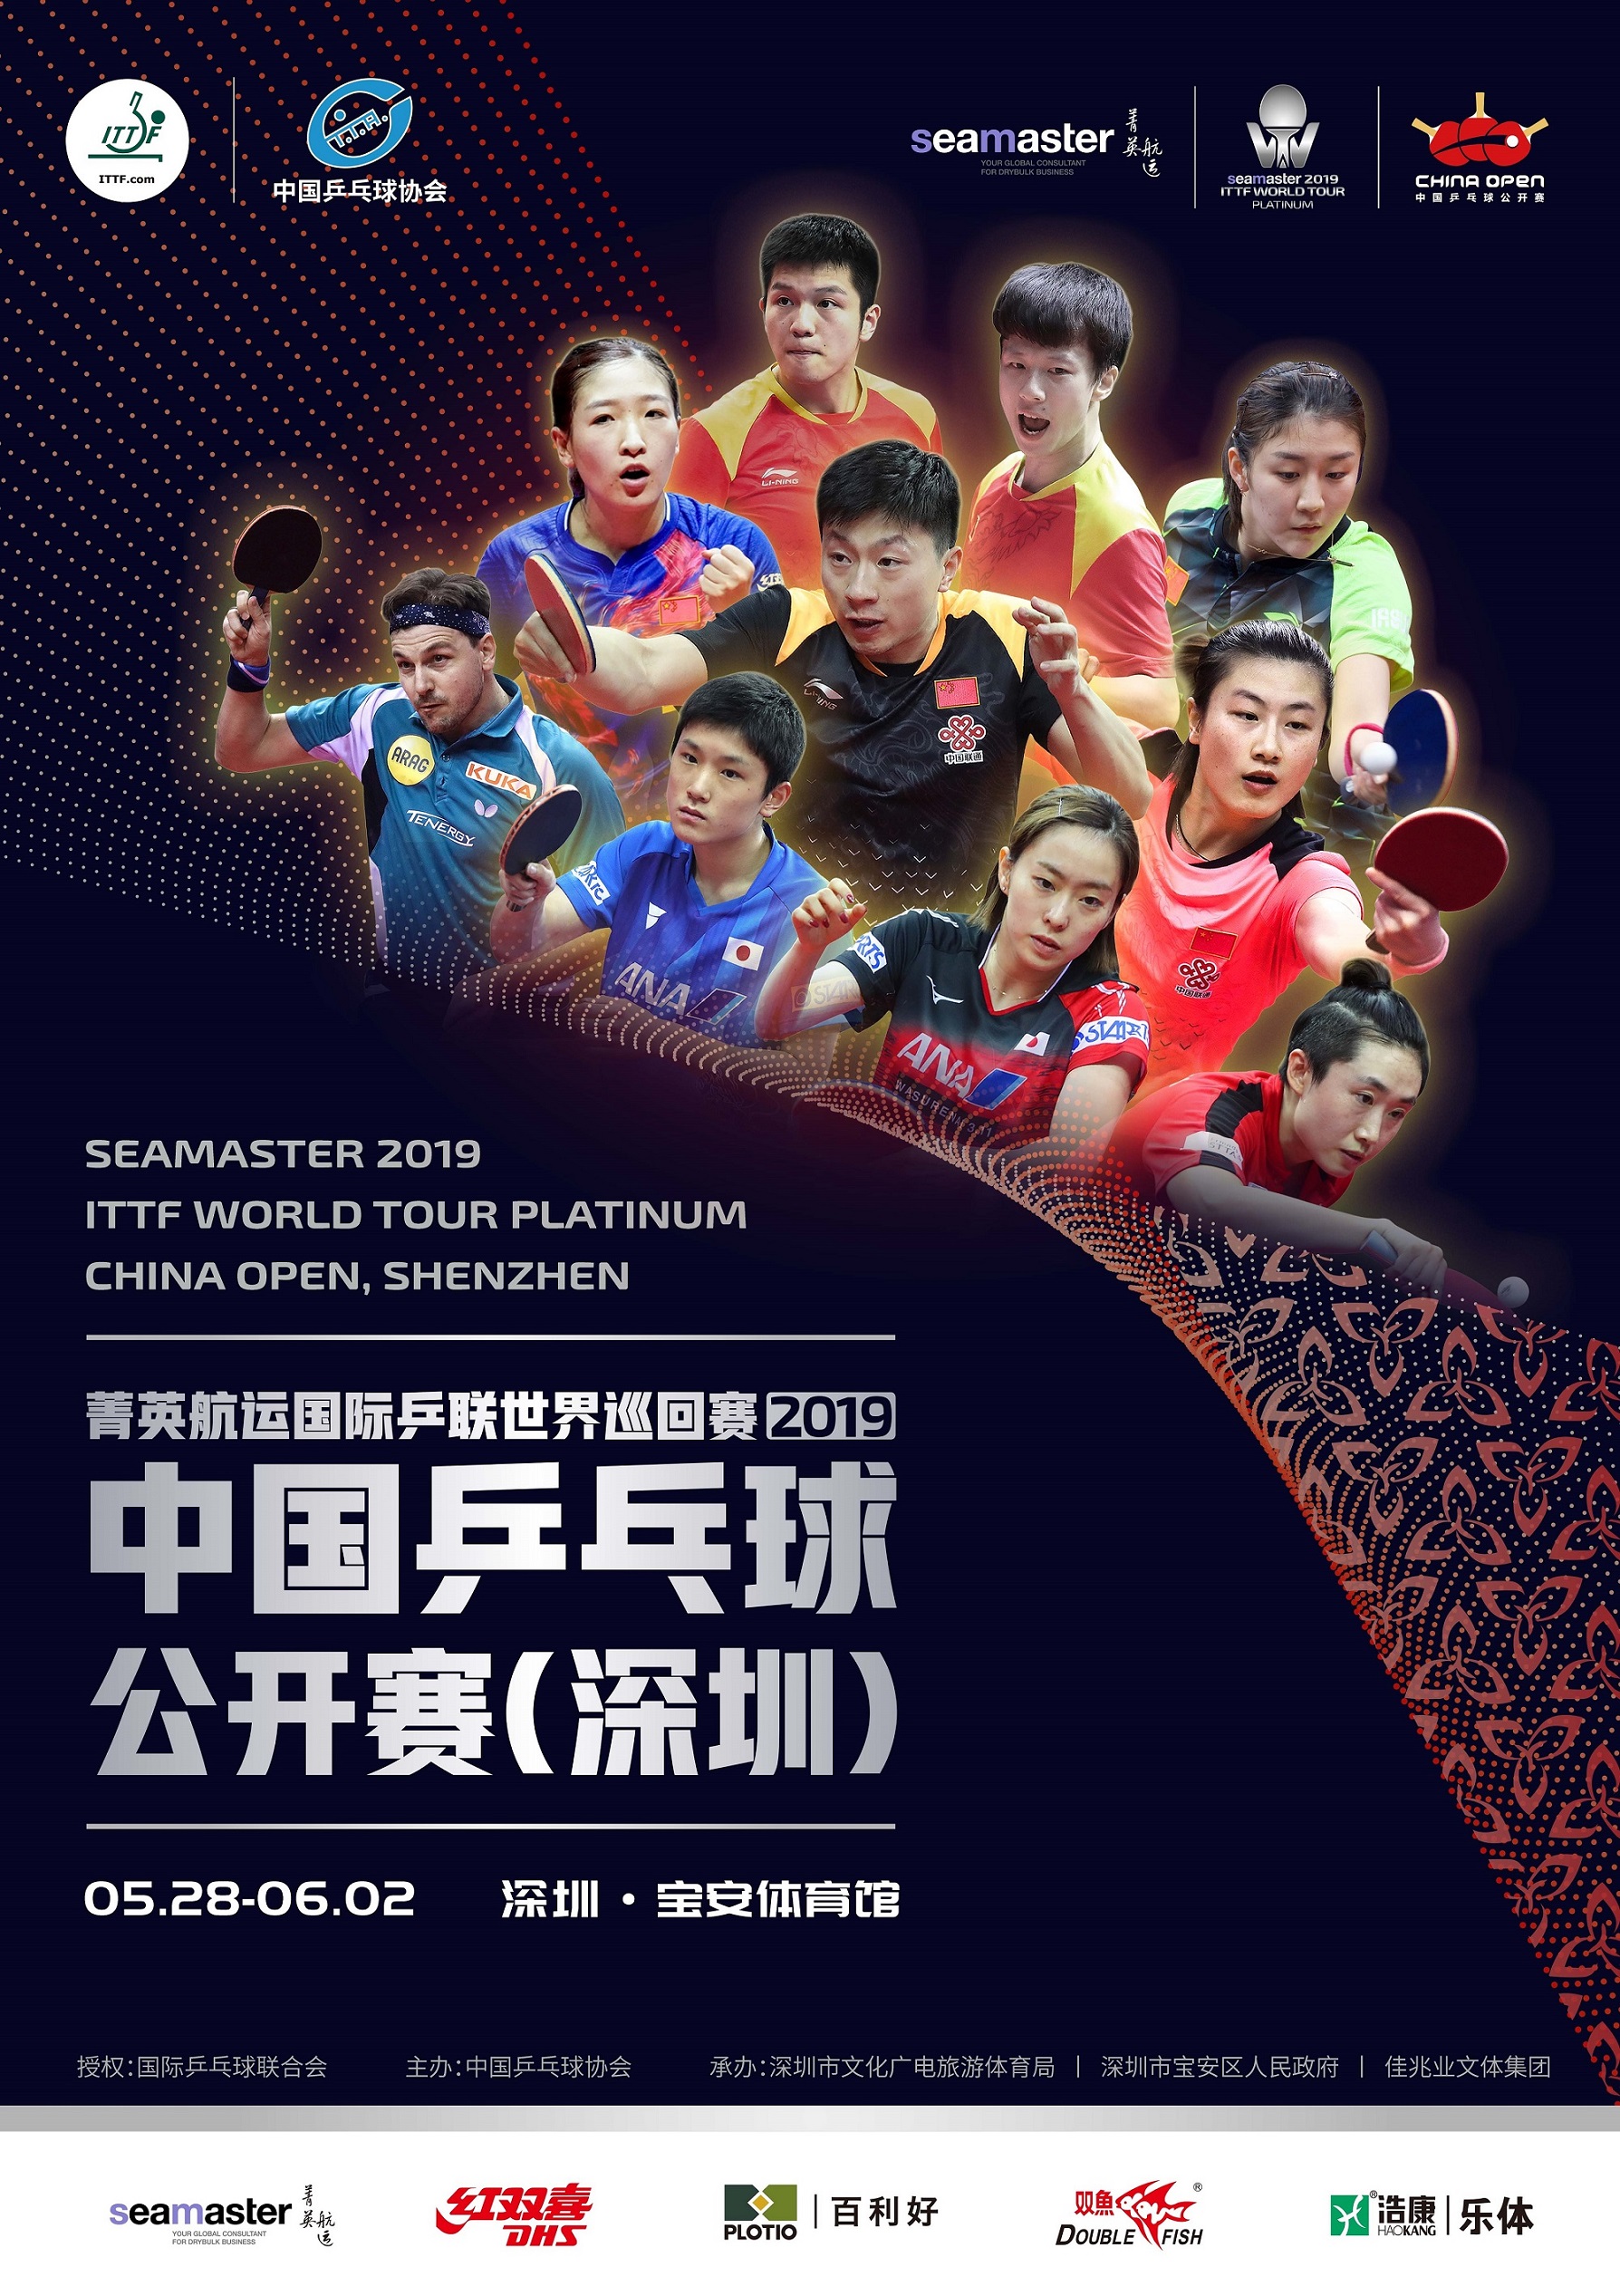 菁英航运国际乒联世界巡回赛·2019年中国乒乓球公开赛将于5月28日至6